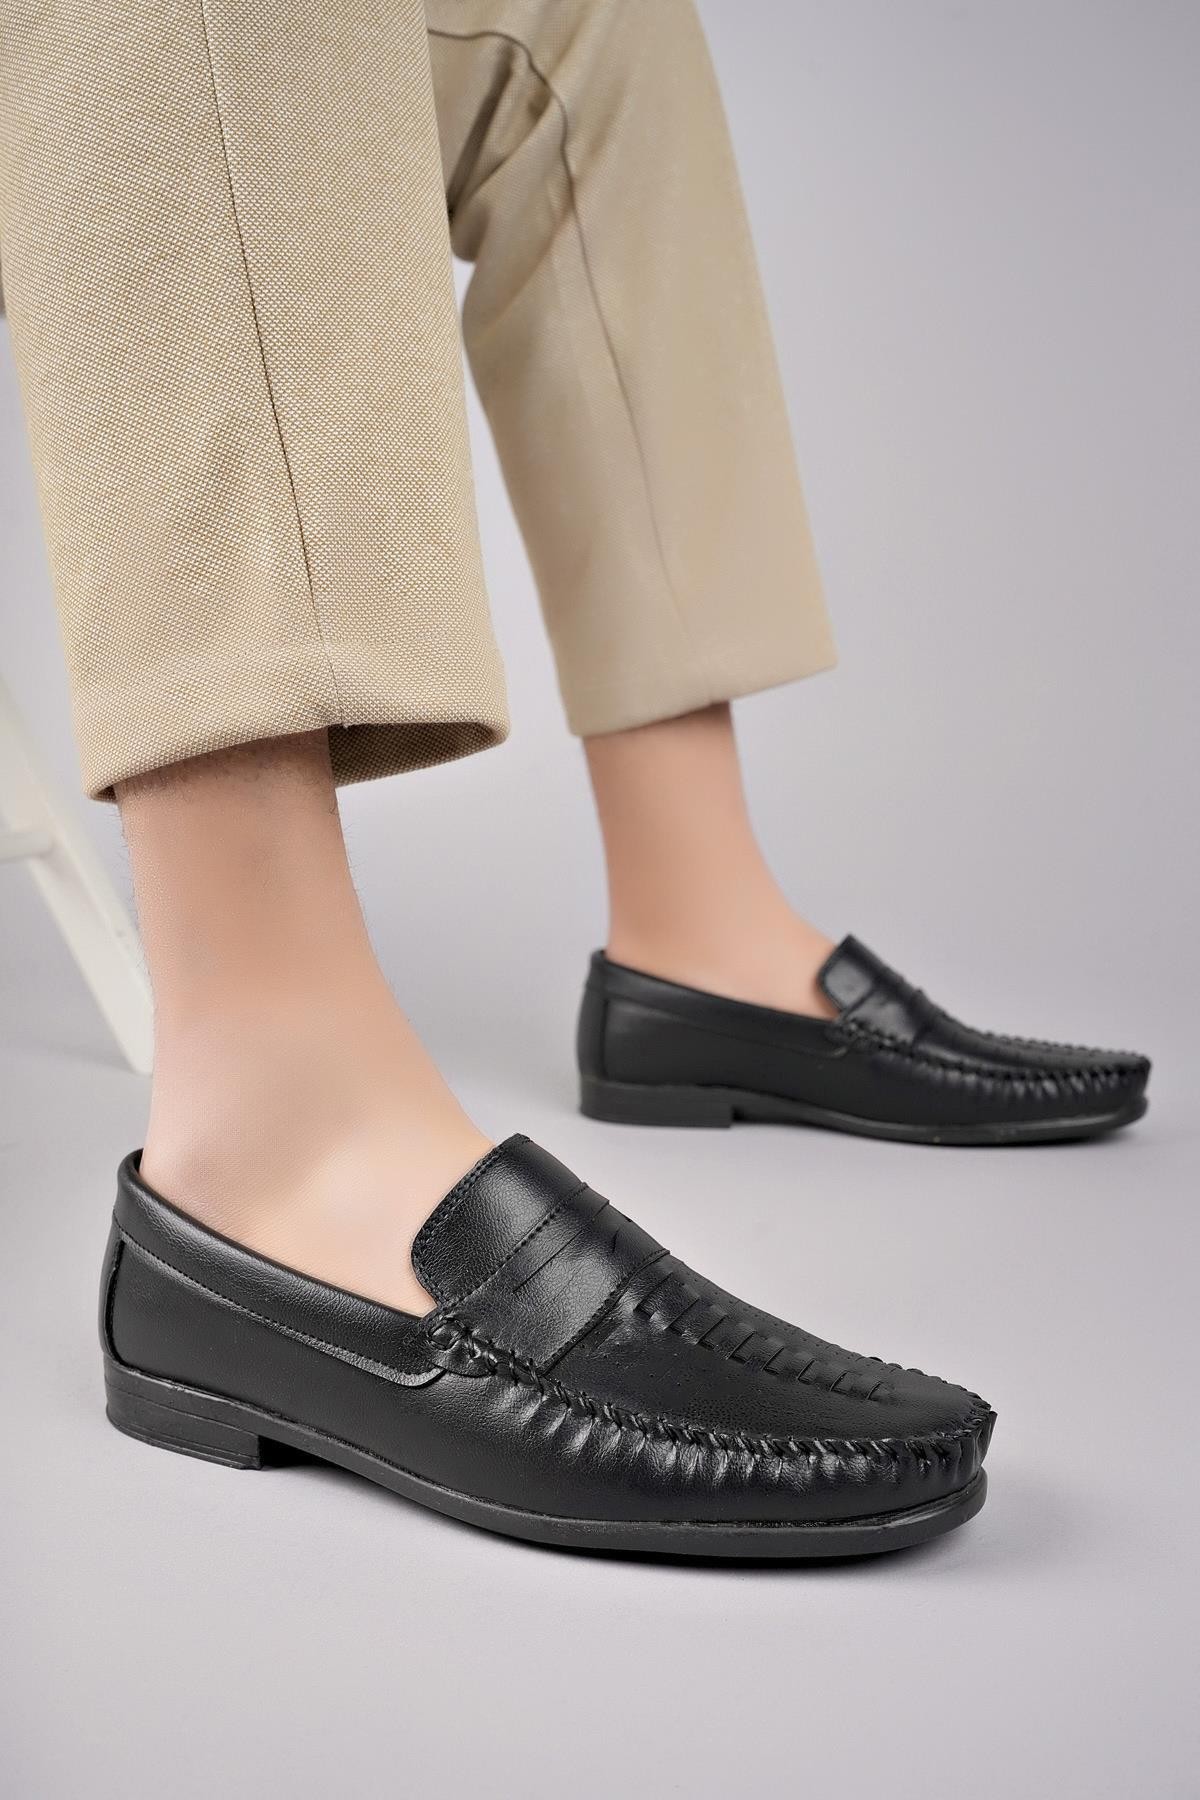 Muggo RANDALL Garantili Erkek Günlük Klasik Casual Rahat Ortopedik Ayakkabı